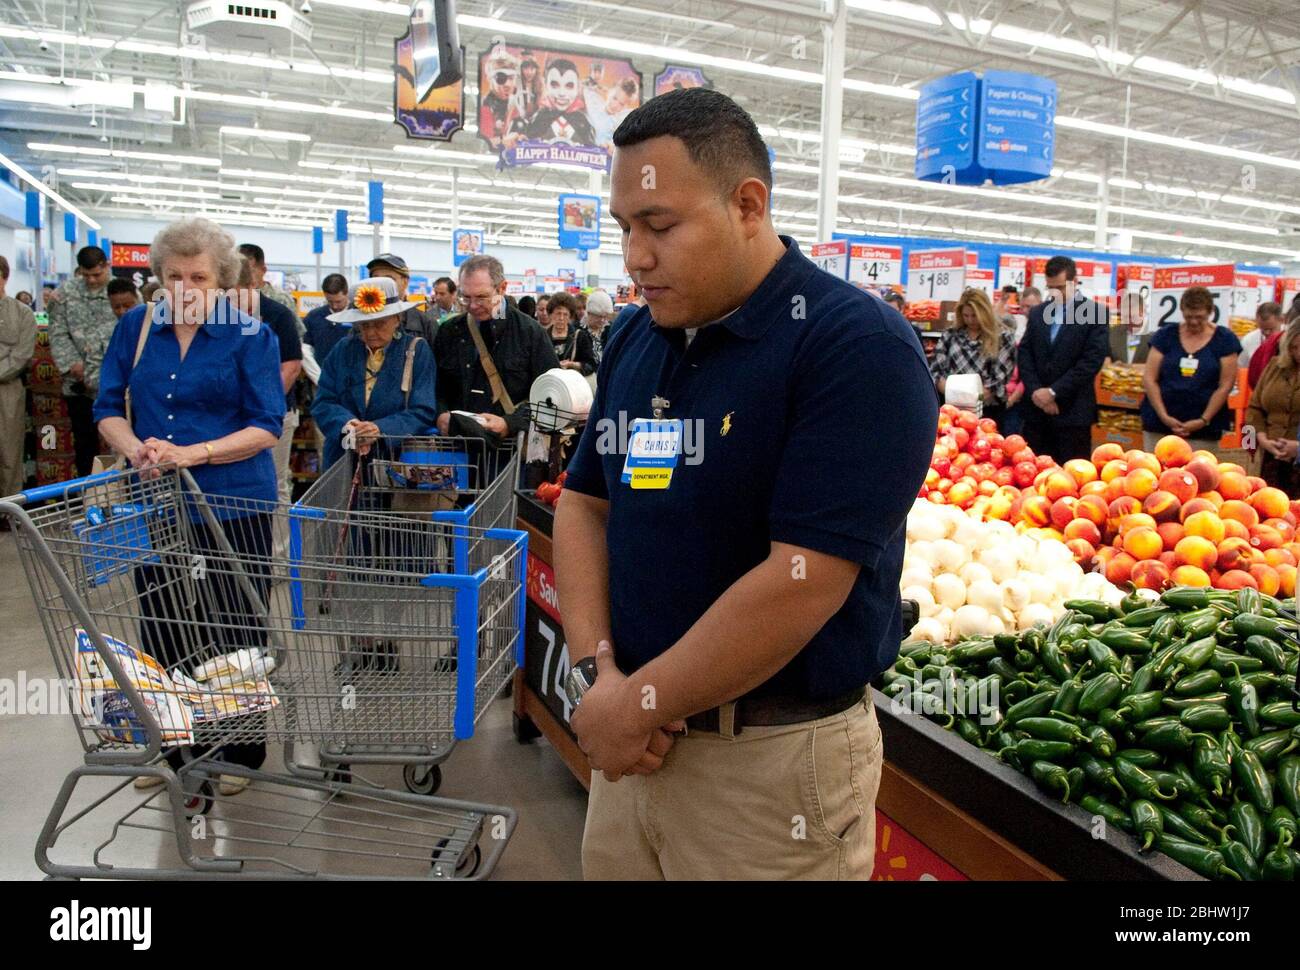 À Austin, Texas 26 octobre 2010 : les employés et les acheteurs de Walmart se sont inclinés la tête pour une prière lors de la grande cérémonie d'ouverture du nouveau magasin. ©Marjorie Kamys Cotera/Daemmrich Photographie Banque D'Images